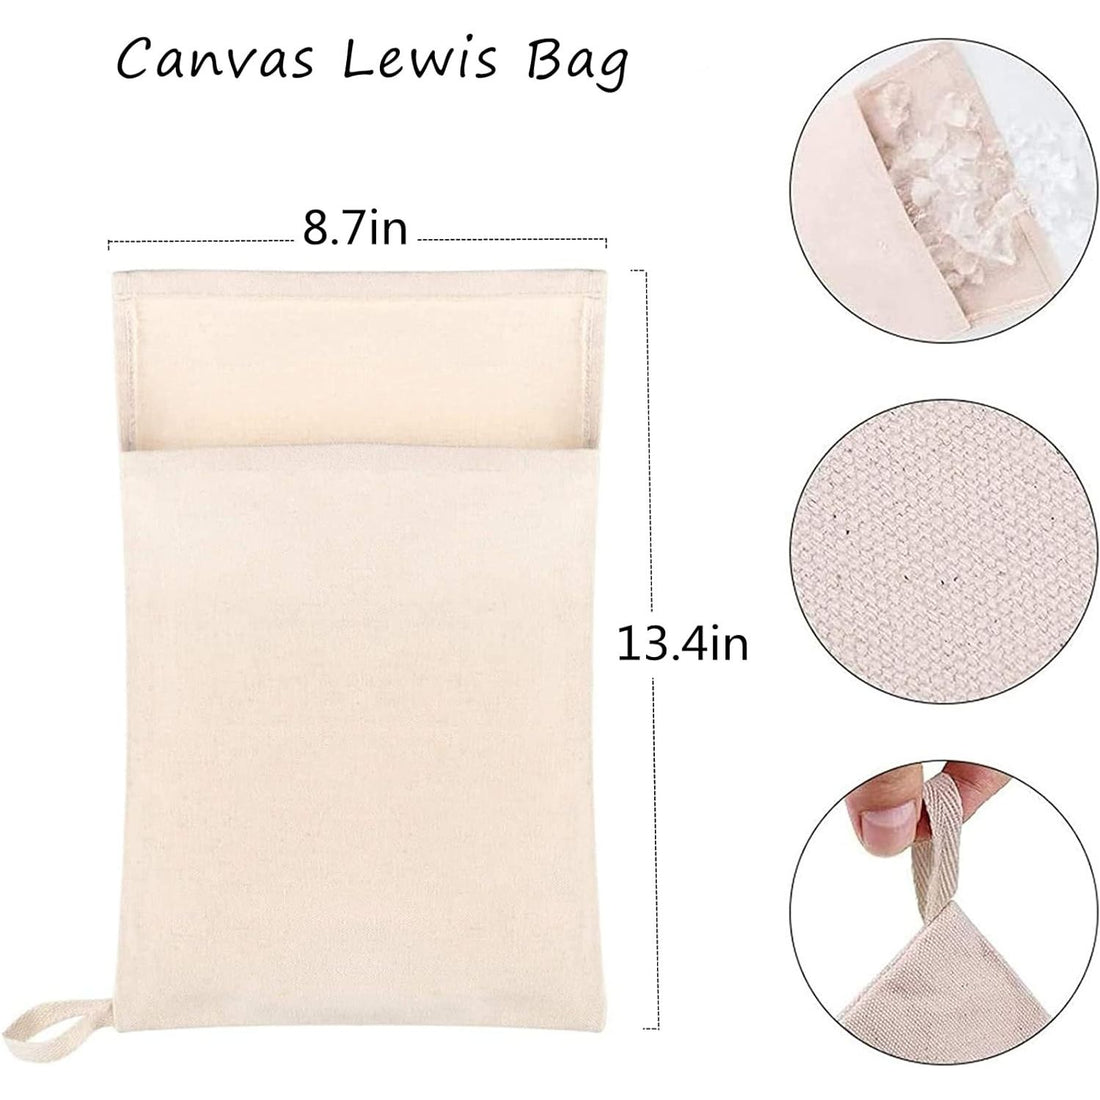 Canvas Lewis Bag